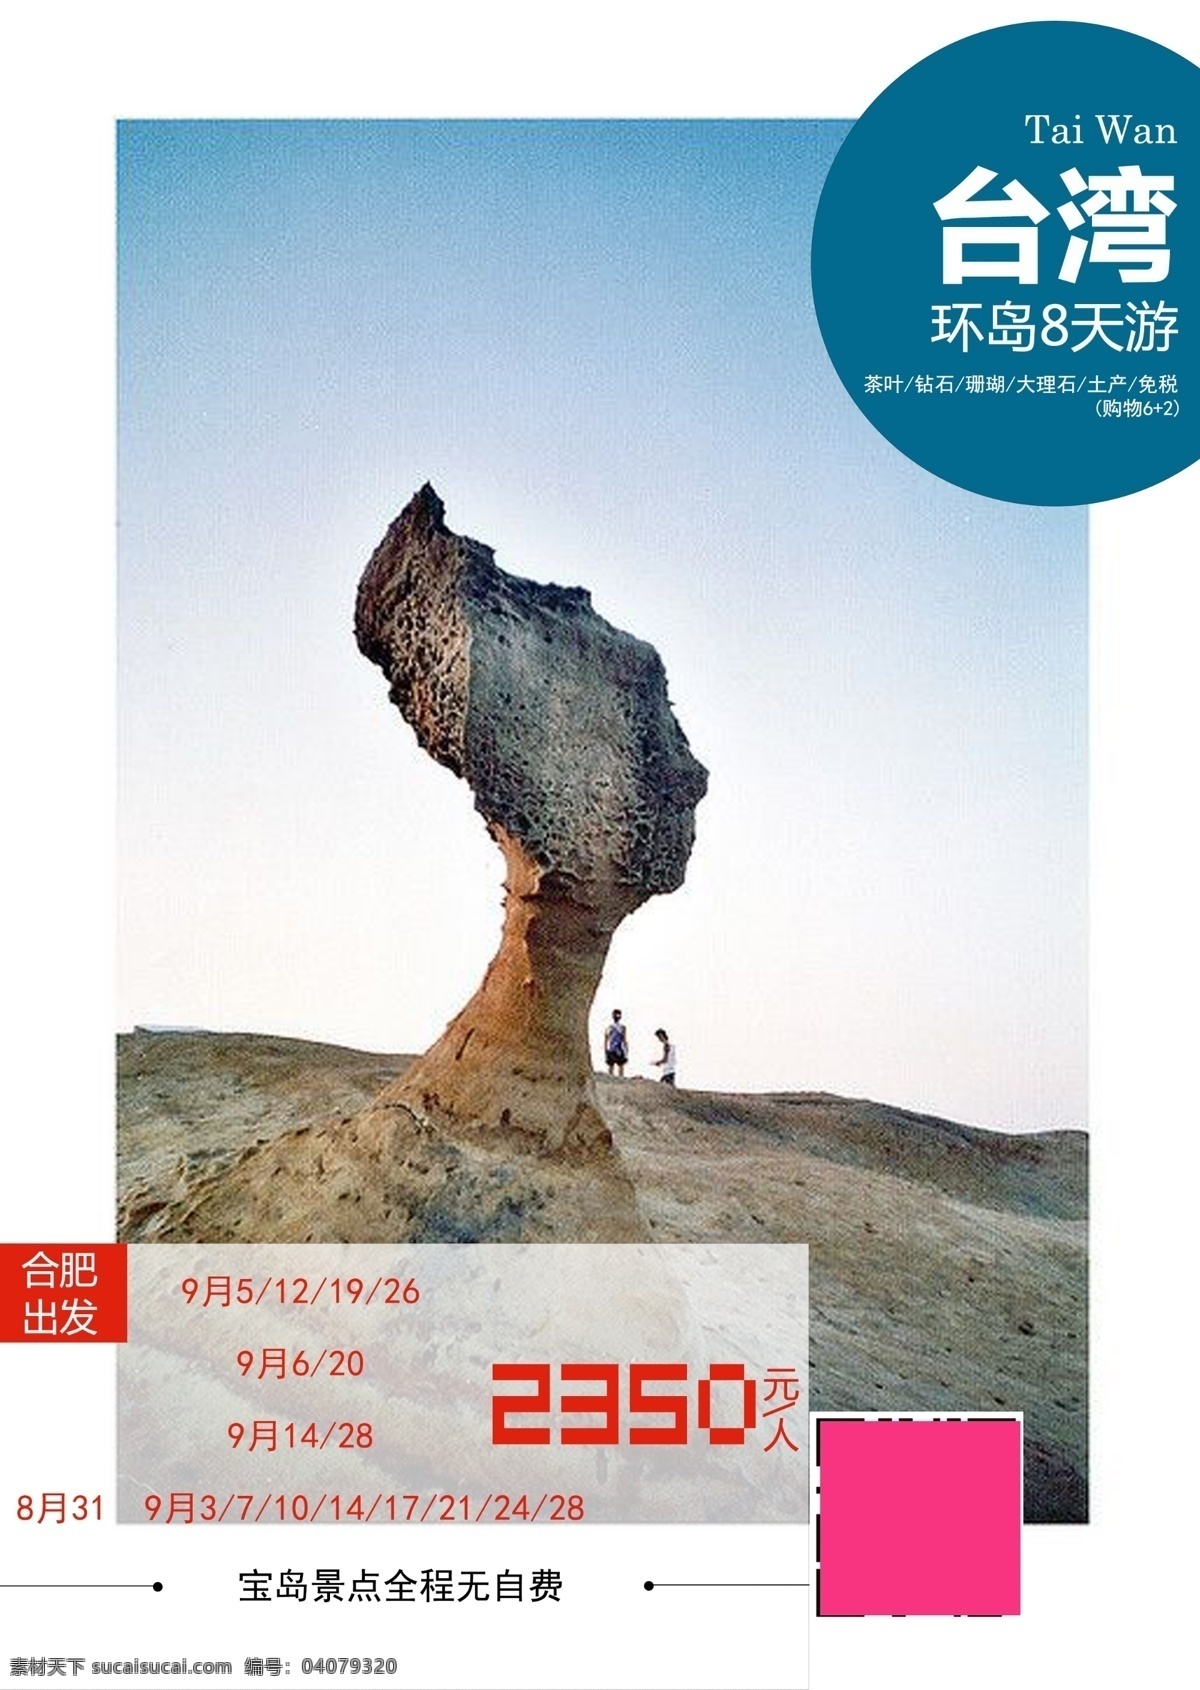 台湾旅游海报 台湾 旅游素材 野质公园 女王 宝岛